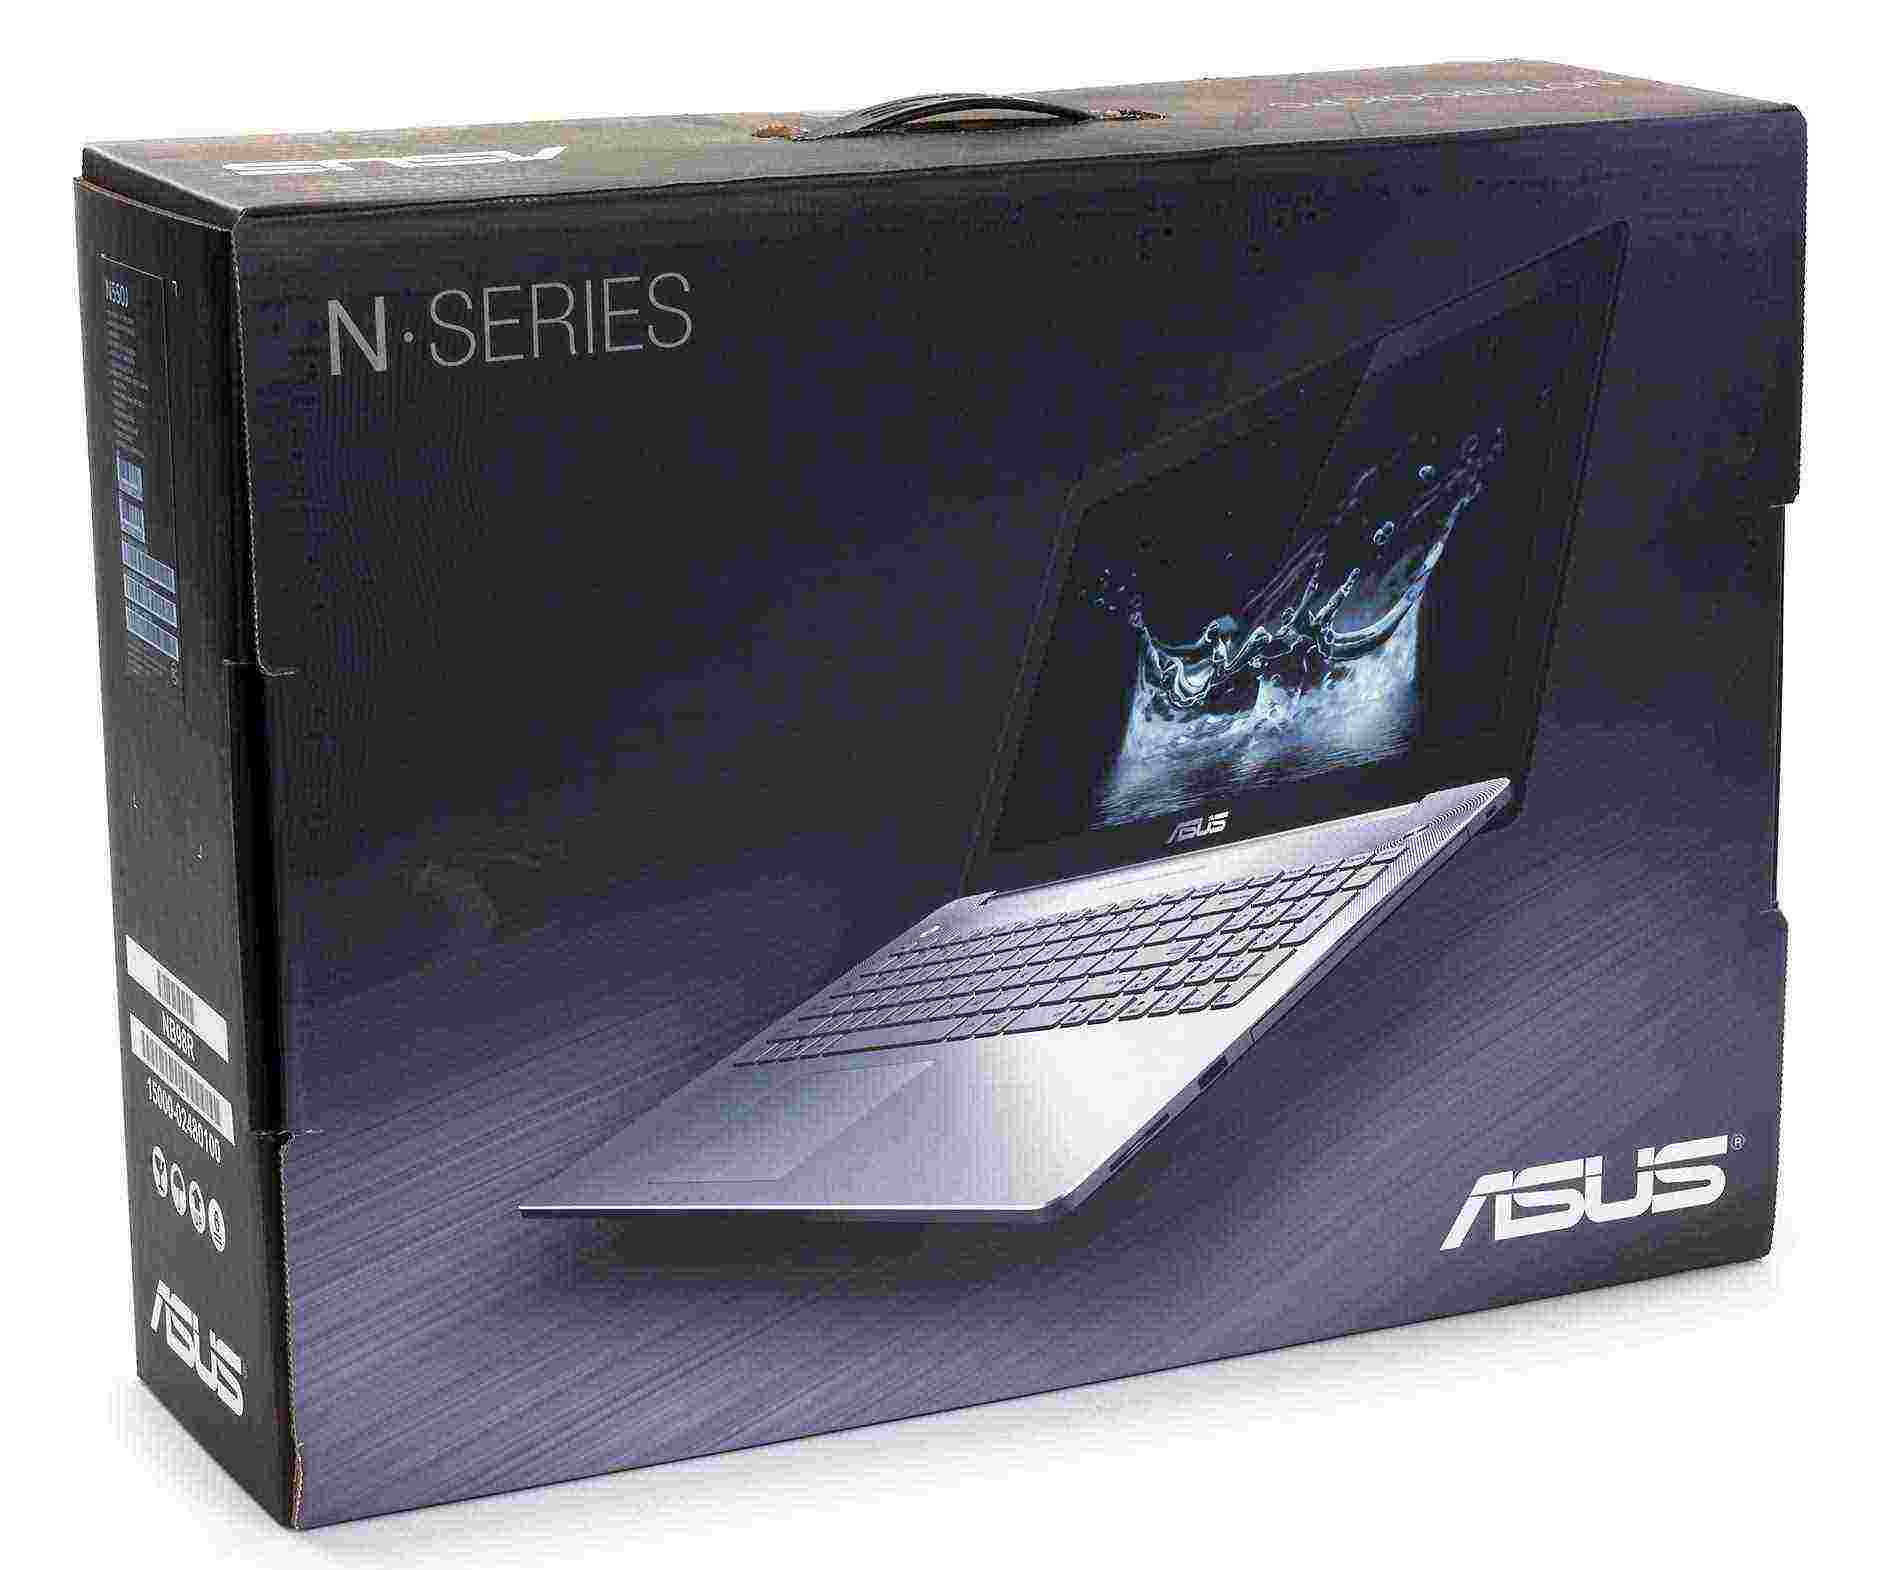 Мультимедийный ноутбук ASUS N550jk (подробный обзор)